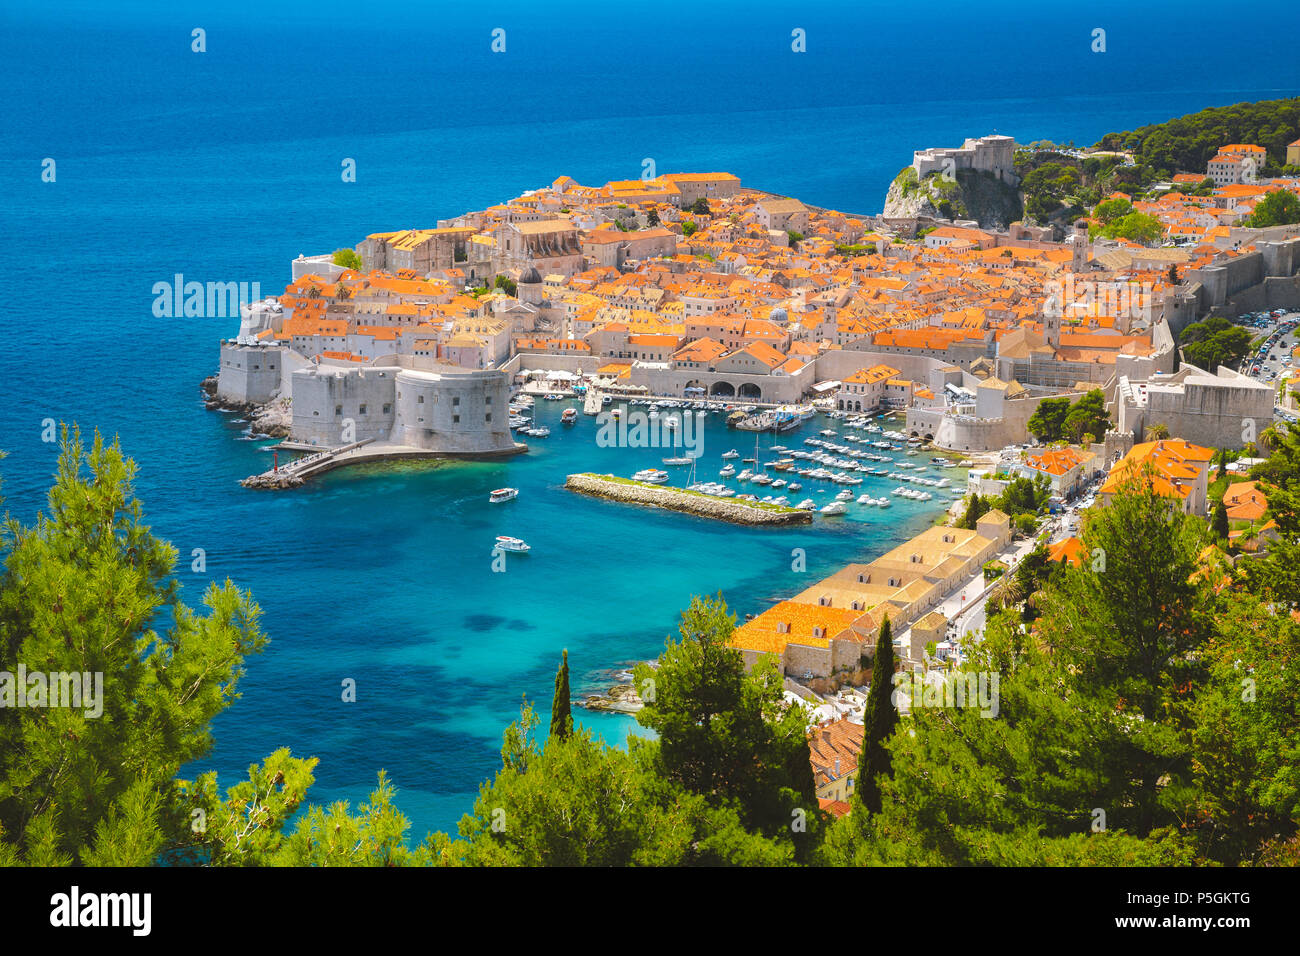 Panoramablick auf das luftbild der Altstadt von Dubrovnik, eines der bekanntesten touristischen Destinationen im Mittelmeer, von Srd Berg Stockfoto